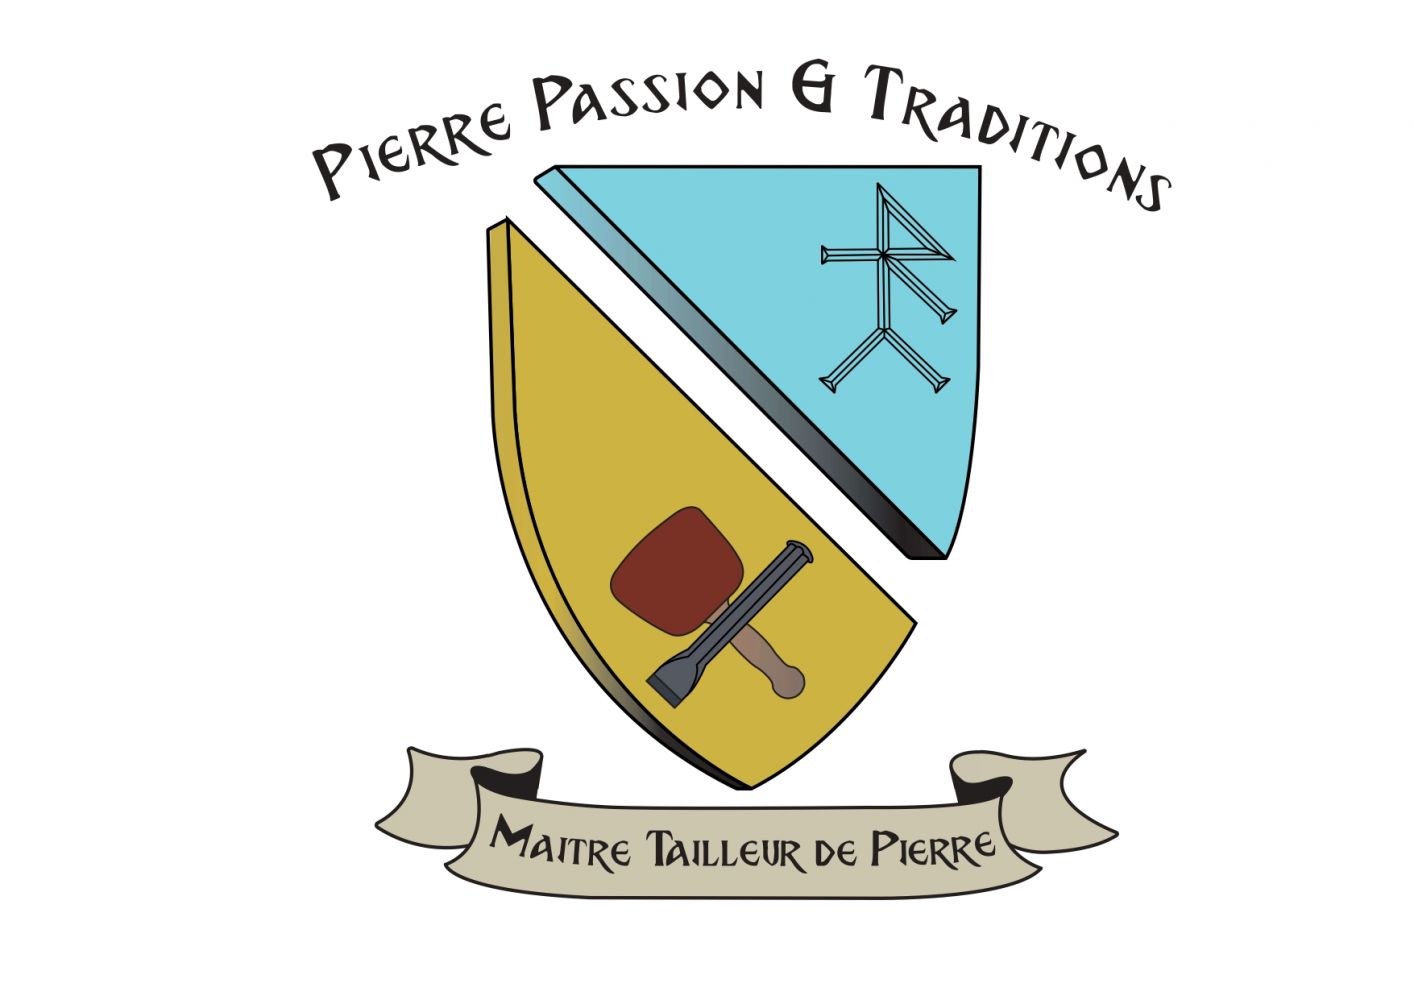 Pierre Passion et Traditions